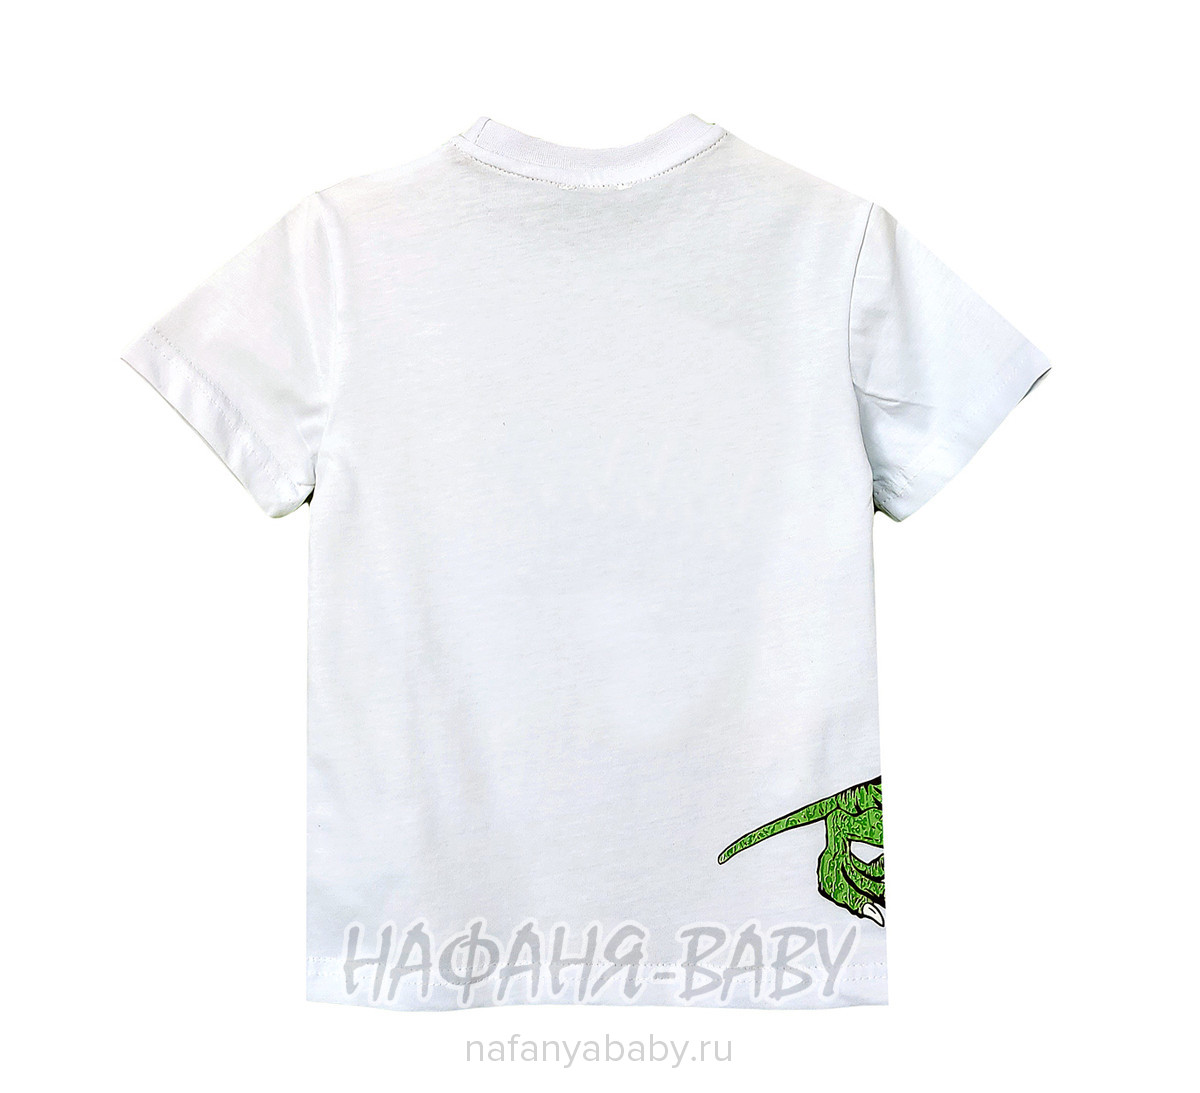 Детская футболка ALG арт: 222614, 1-4 года, 5-9 лет, цвет белый, оптом Турция